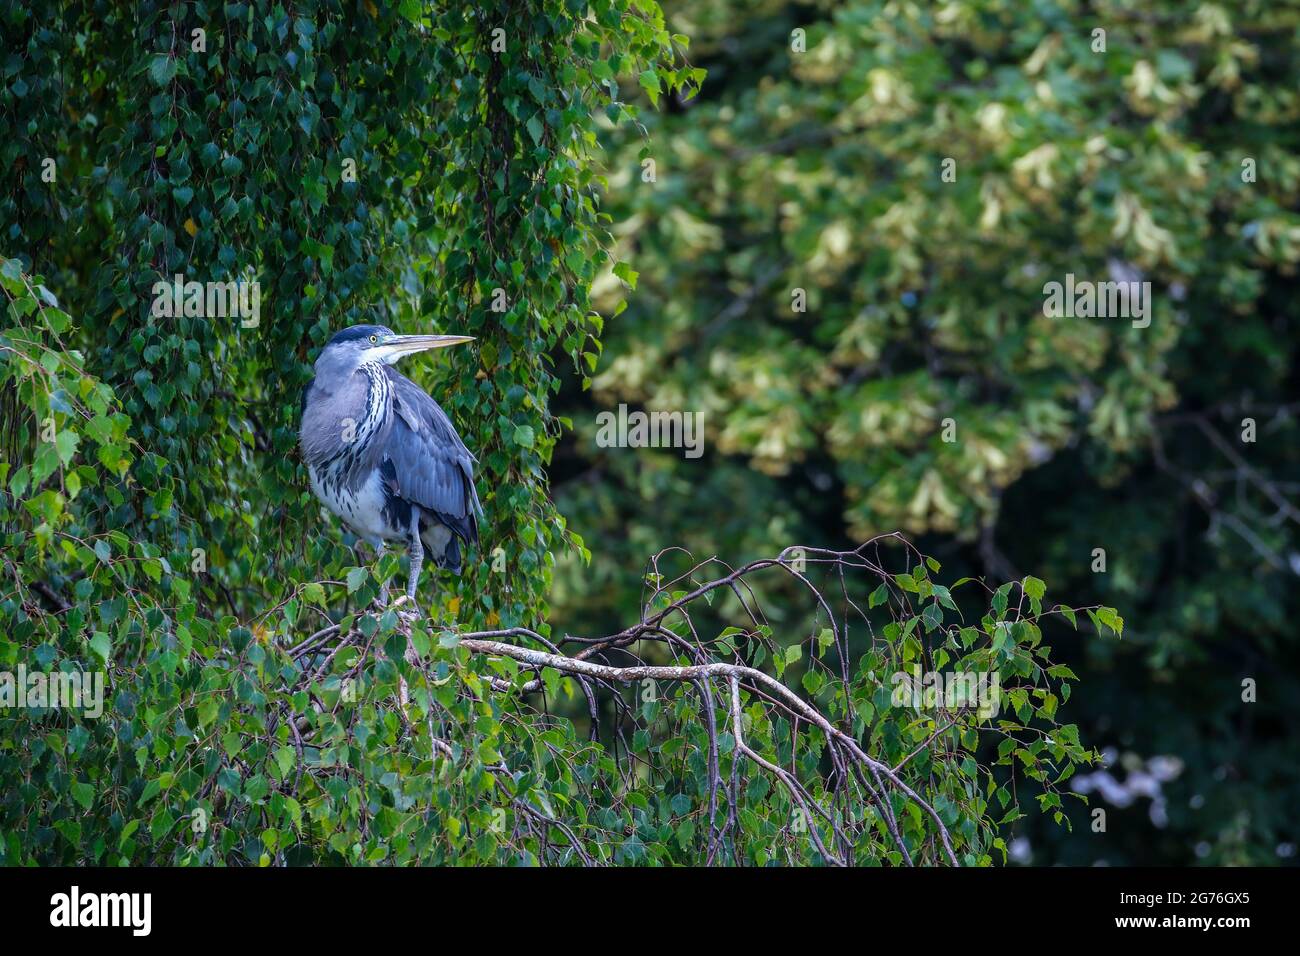 L'oiseau gris « Ardea cinerea » se trouve sur une branche d'arbre, regardant curieusement vers le haut à droite, montrant le bec. Saule pleurant avec des feuilles vertes. Irlande Banque D'Images